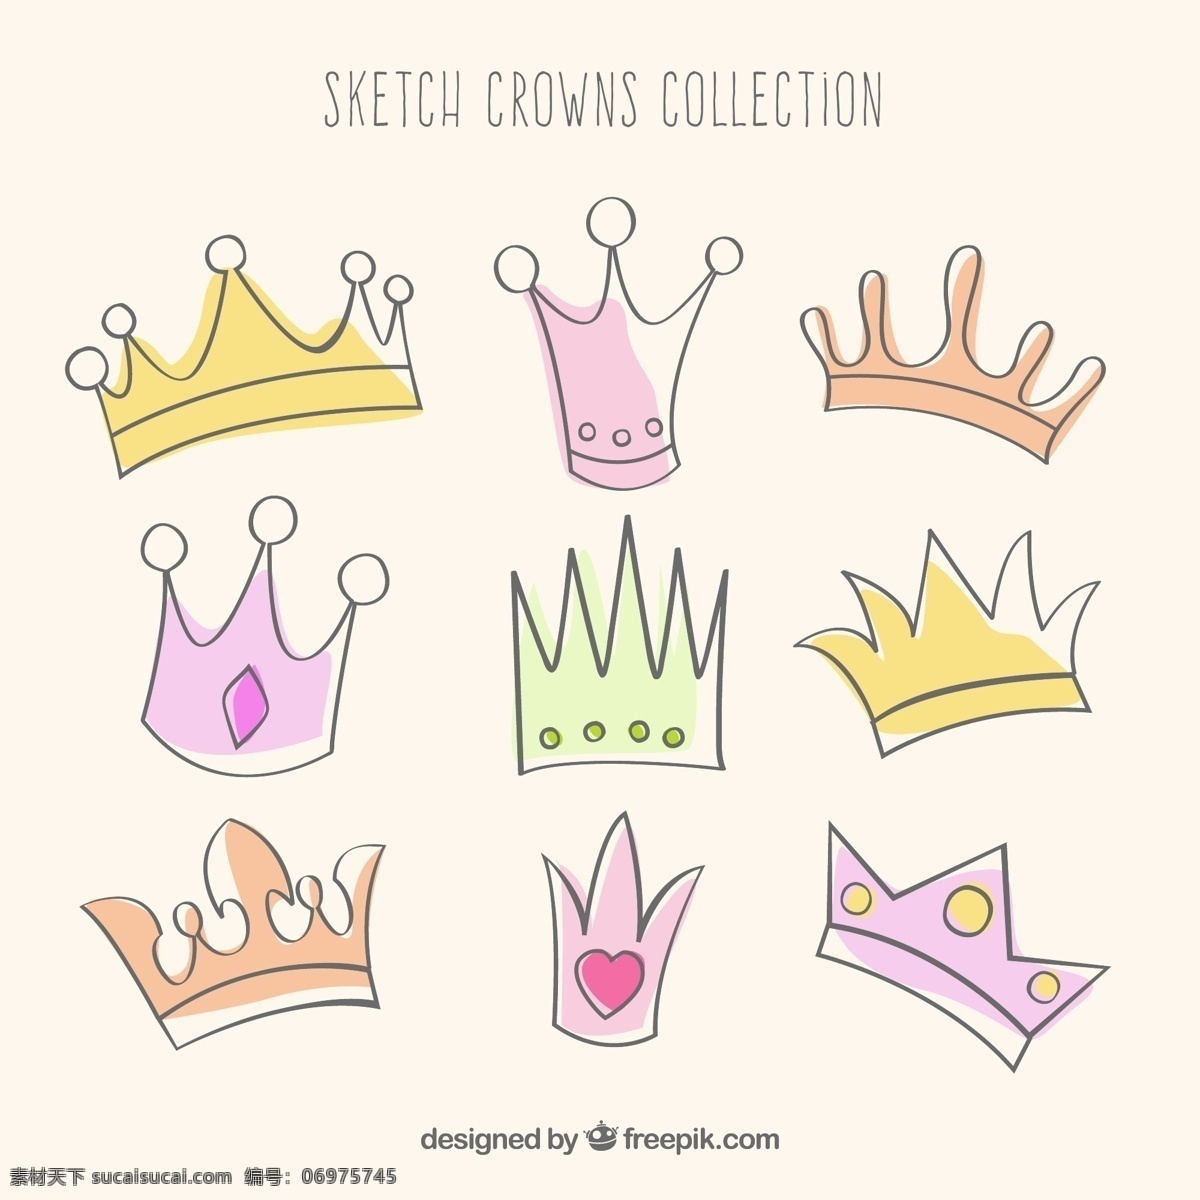 彩绘 王冠 矢量 王冠设计 矢量素材 可爱 卡通